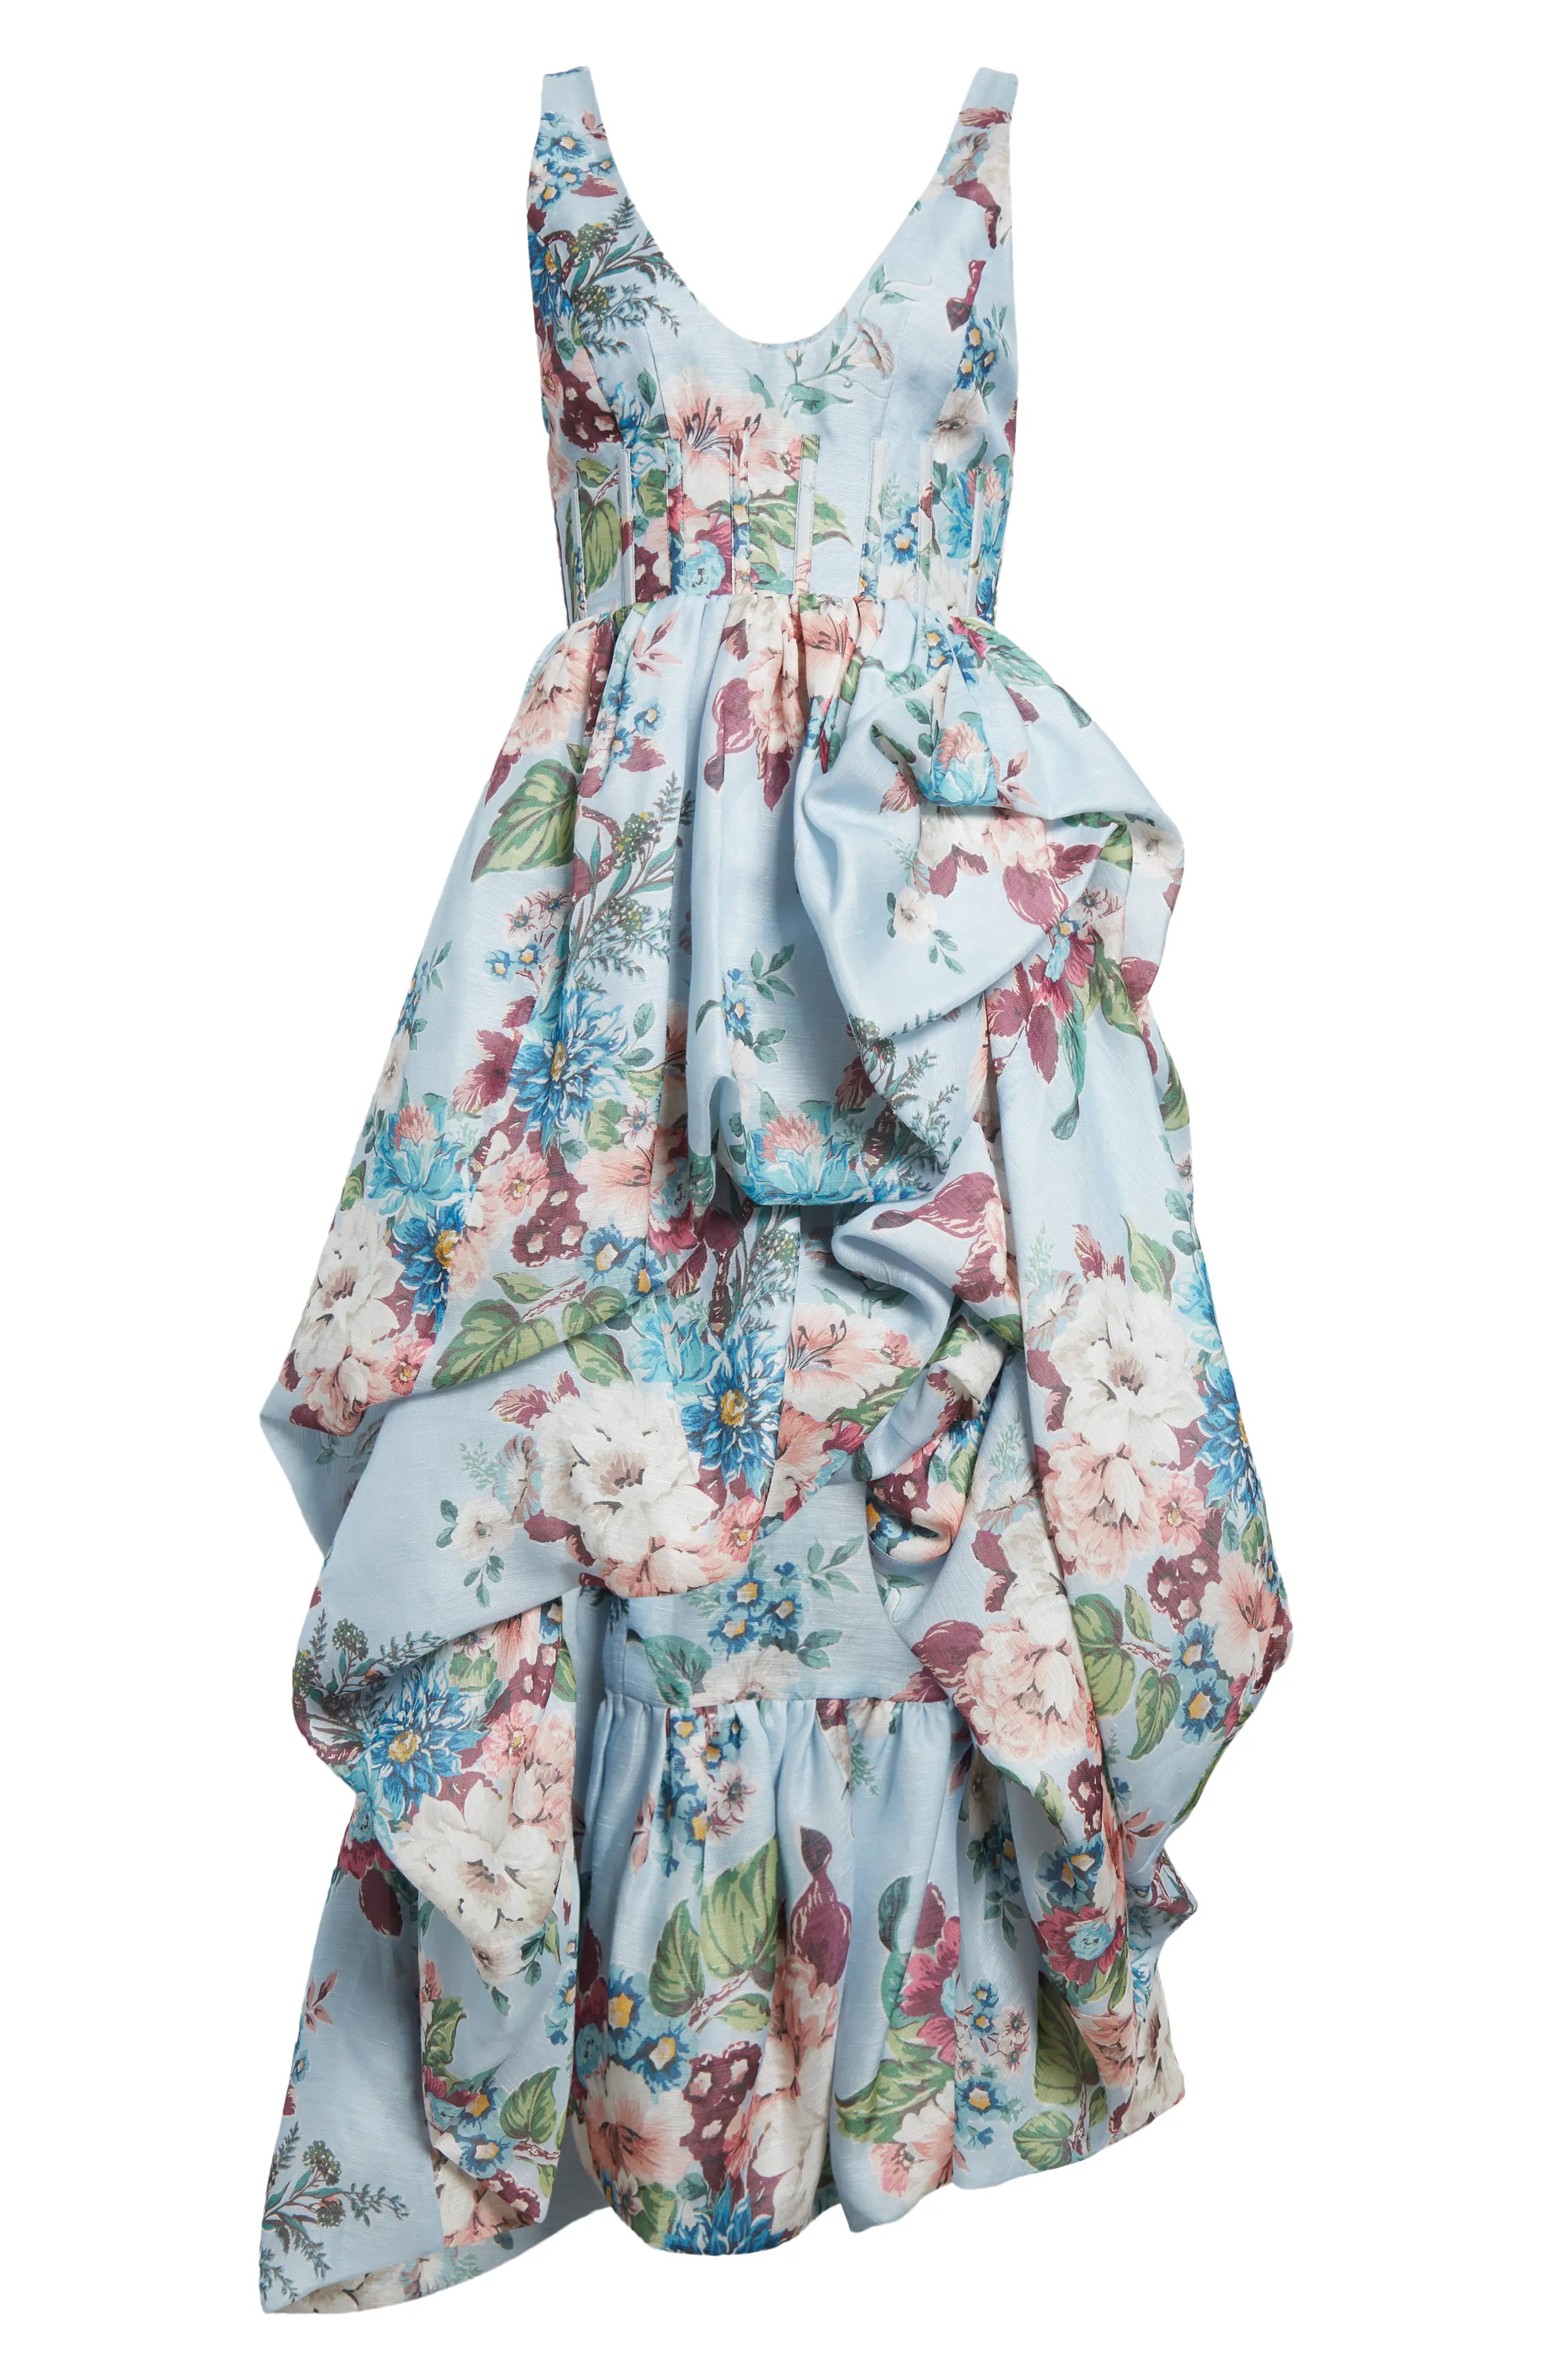 Matchmaker Drape High-Low Linen & Silk Dress - 5